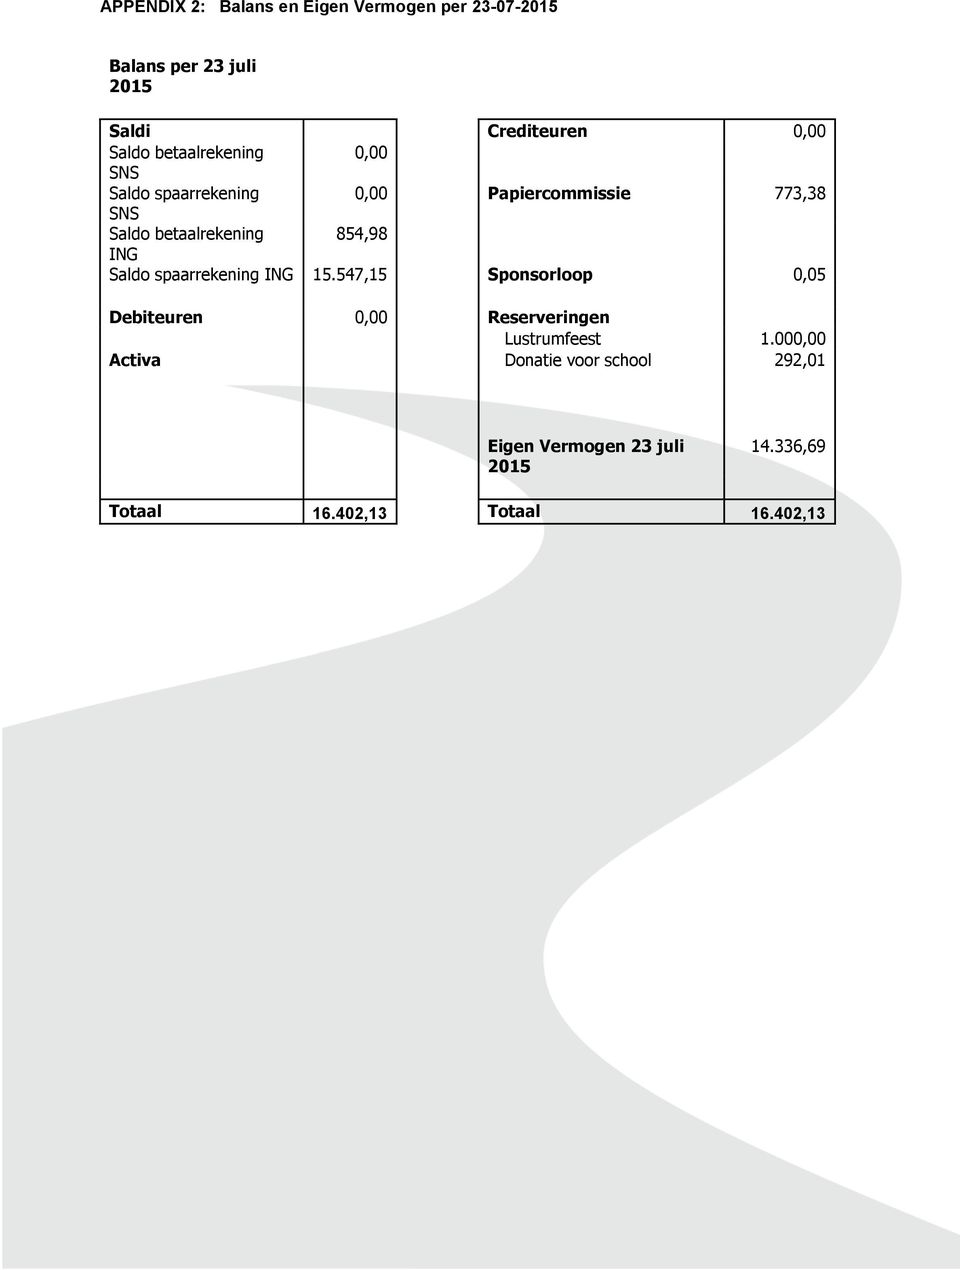 ING Saldo spaarrekening ING 15.547,15 Sponsorloop 0,05 Debiteuren 0,00 Reserveringen Lustrumfeest 1.